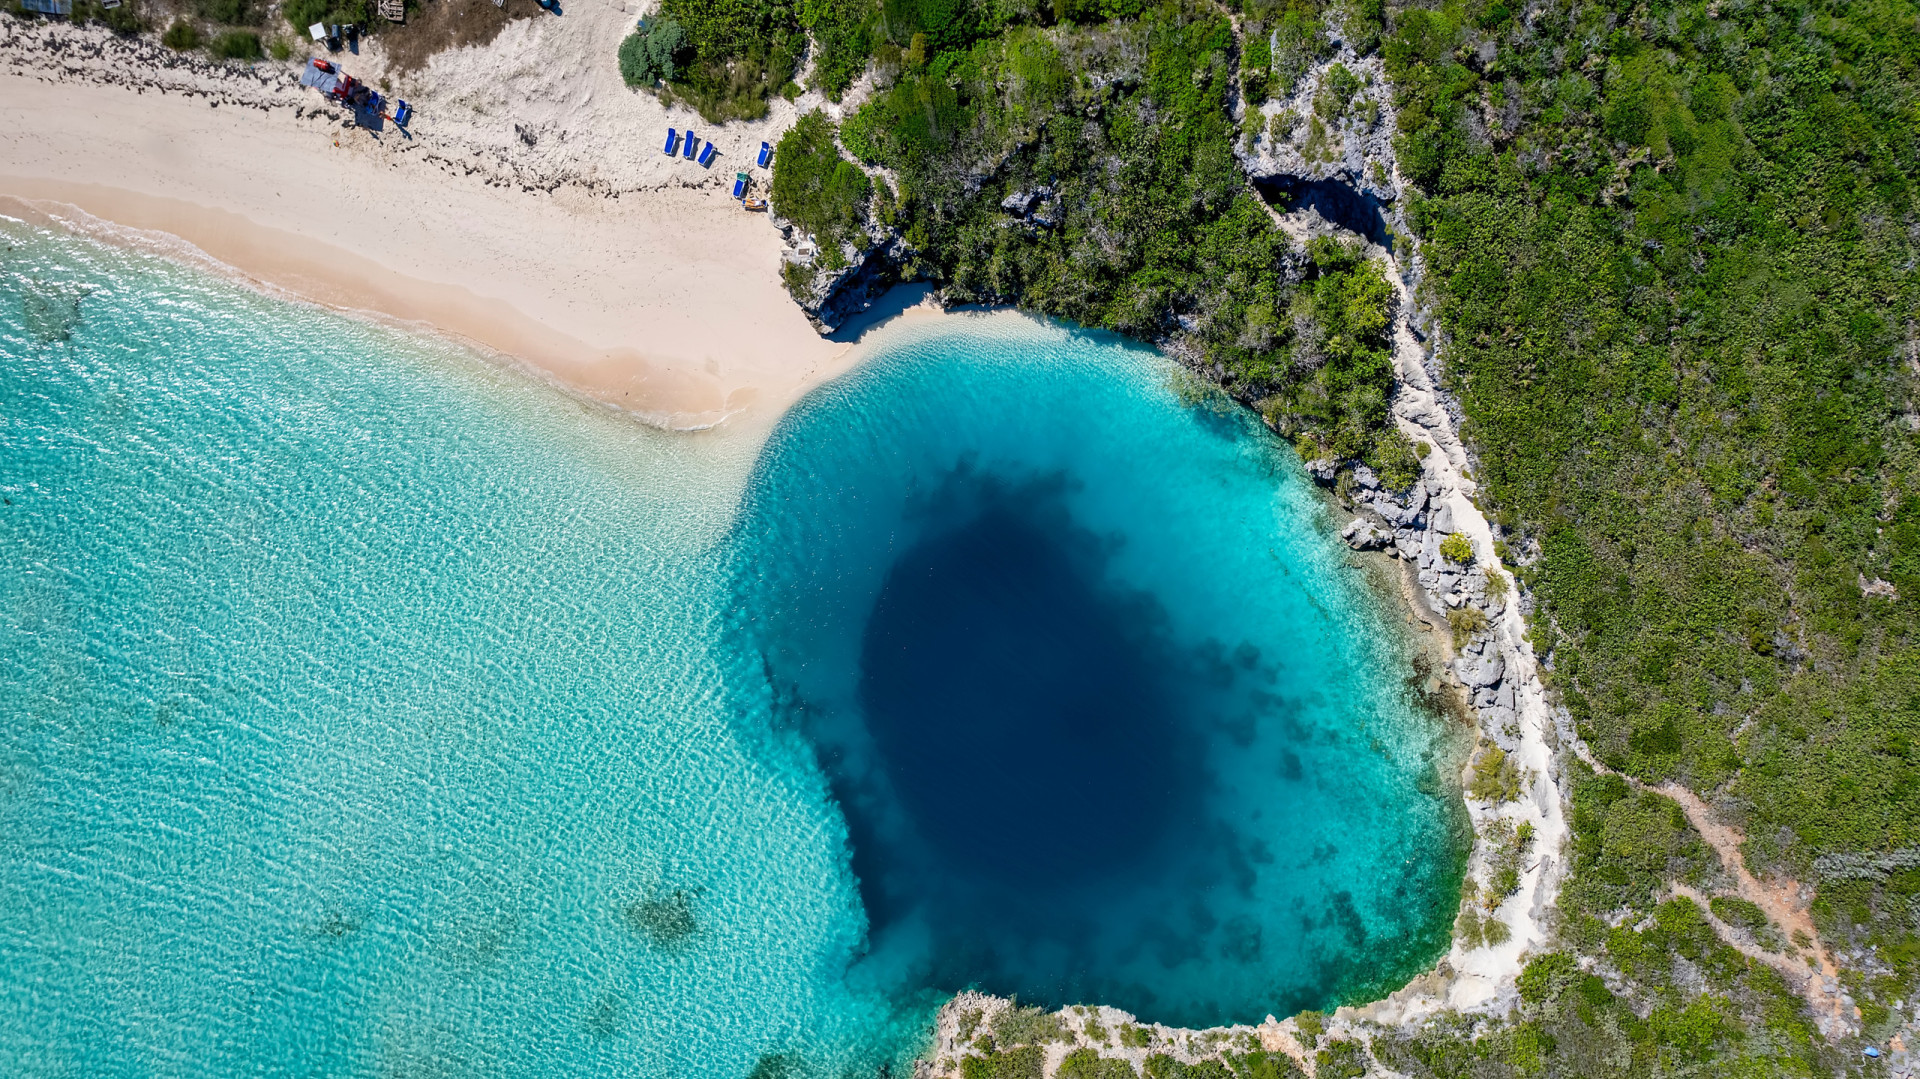 Dean’s Blue Hole – Bahama’s – 663 feet deep